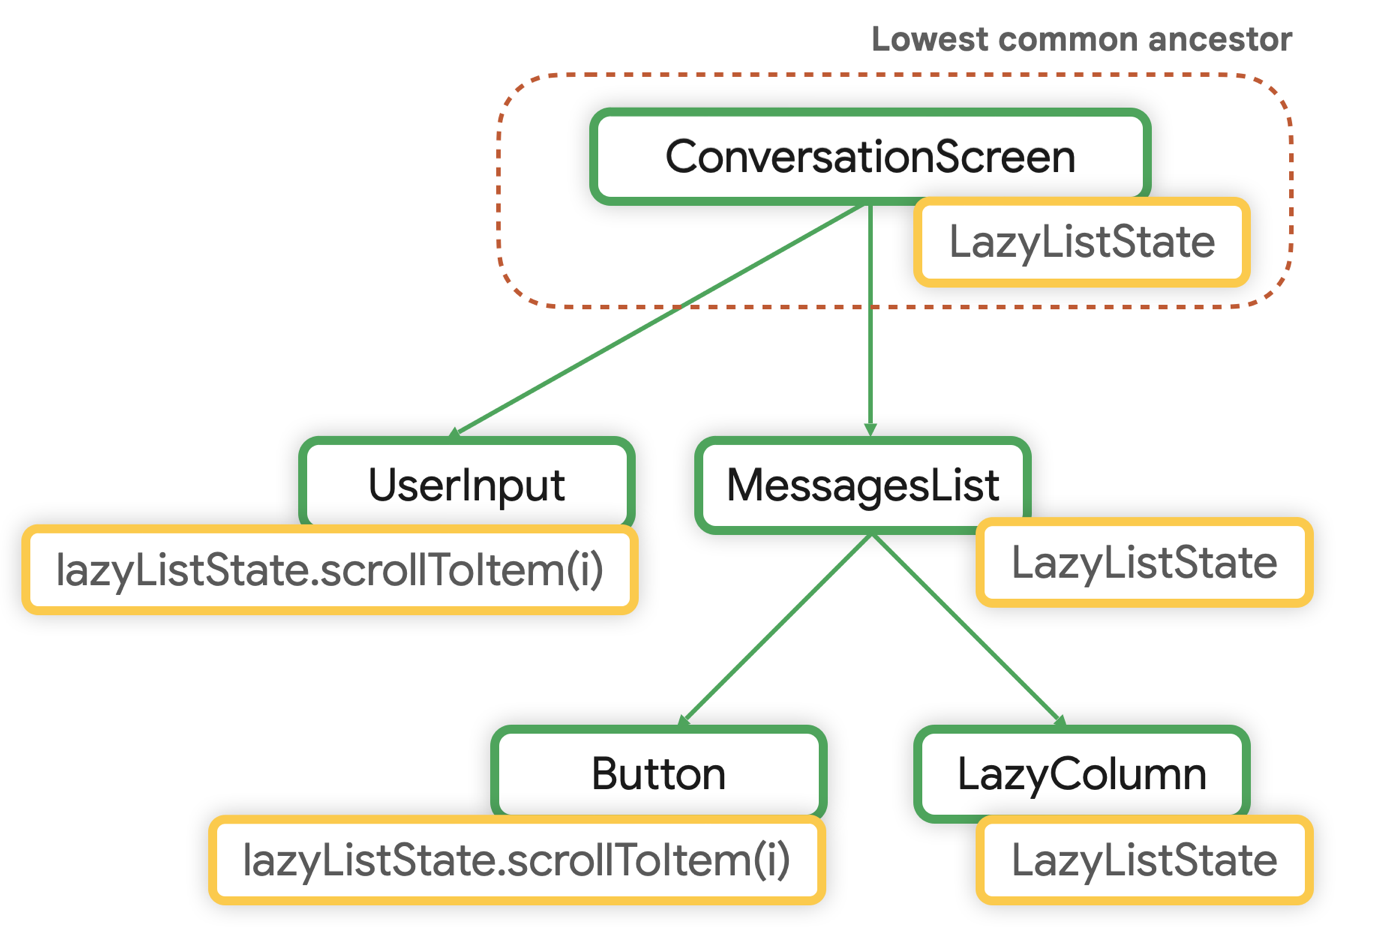 کمترین جد مشترک برای LazyListState، ConversationScreen است